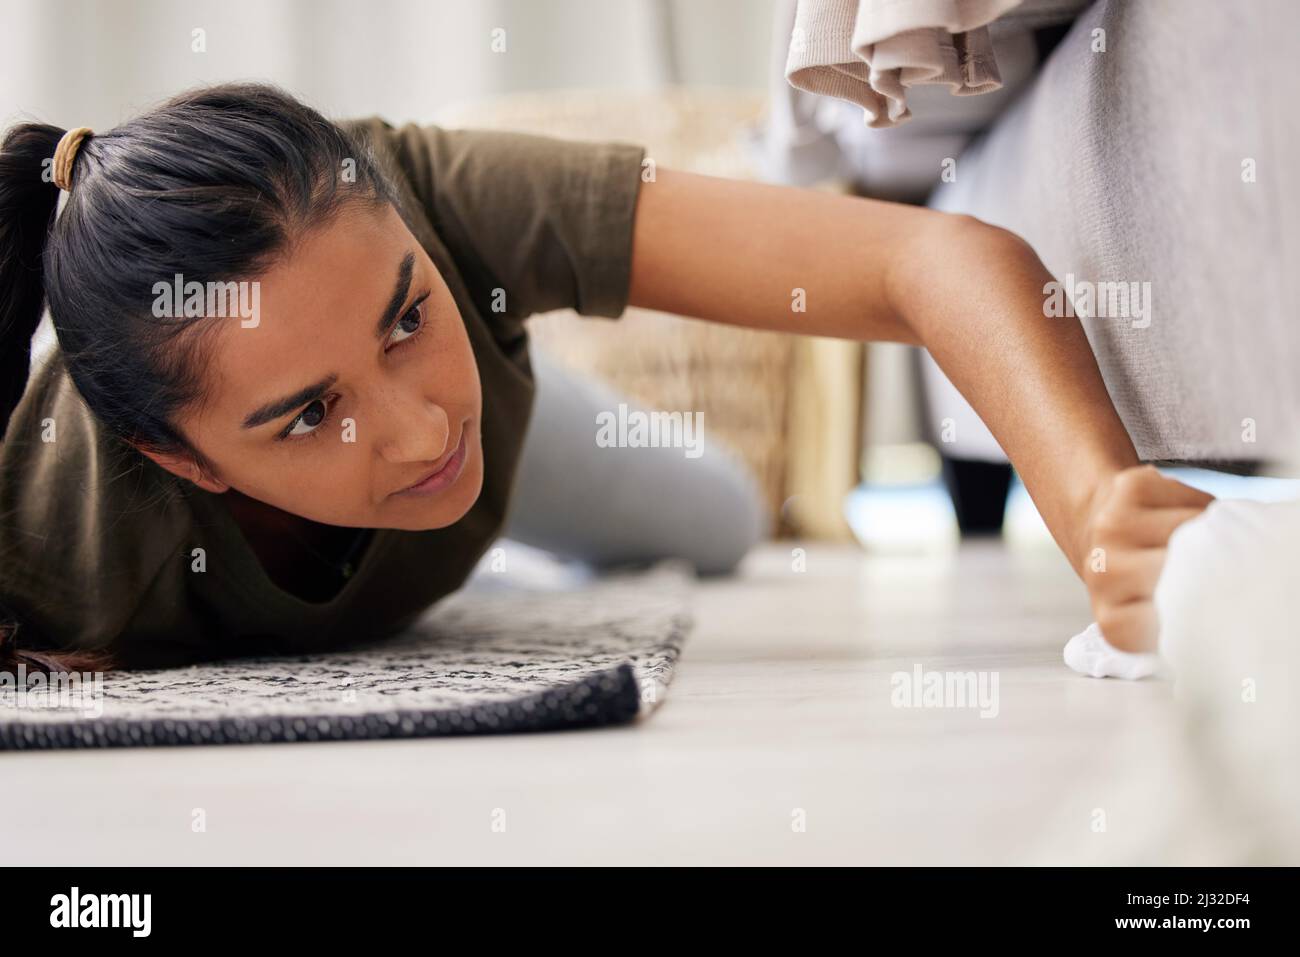 On ne peut pas se permettre de manquer une place. Photo d'une jeune femme qui nettoie le sol à la maison. Banque D'Images